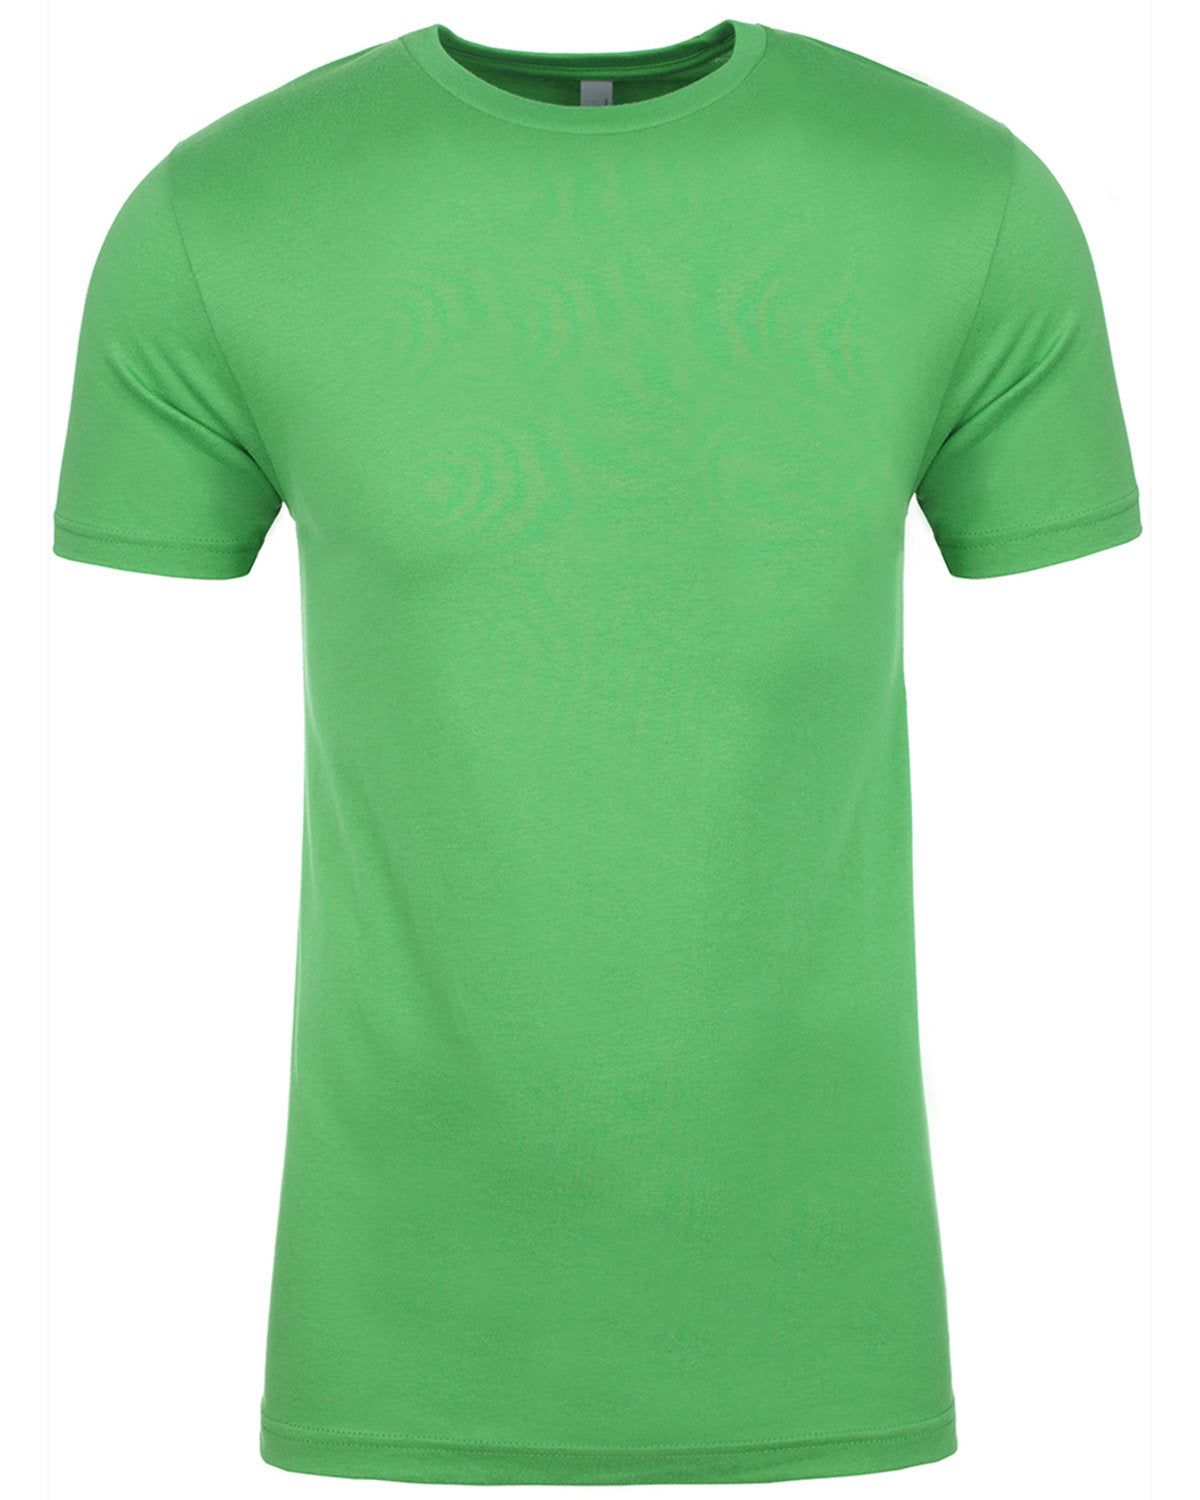 NL3600-Unisex Cotton T-Shirt